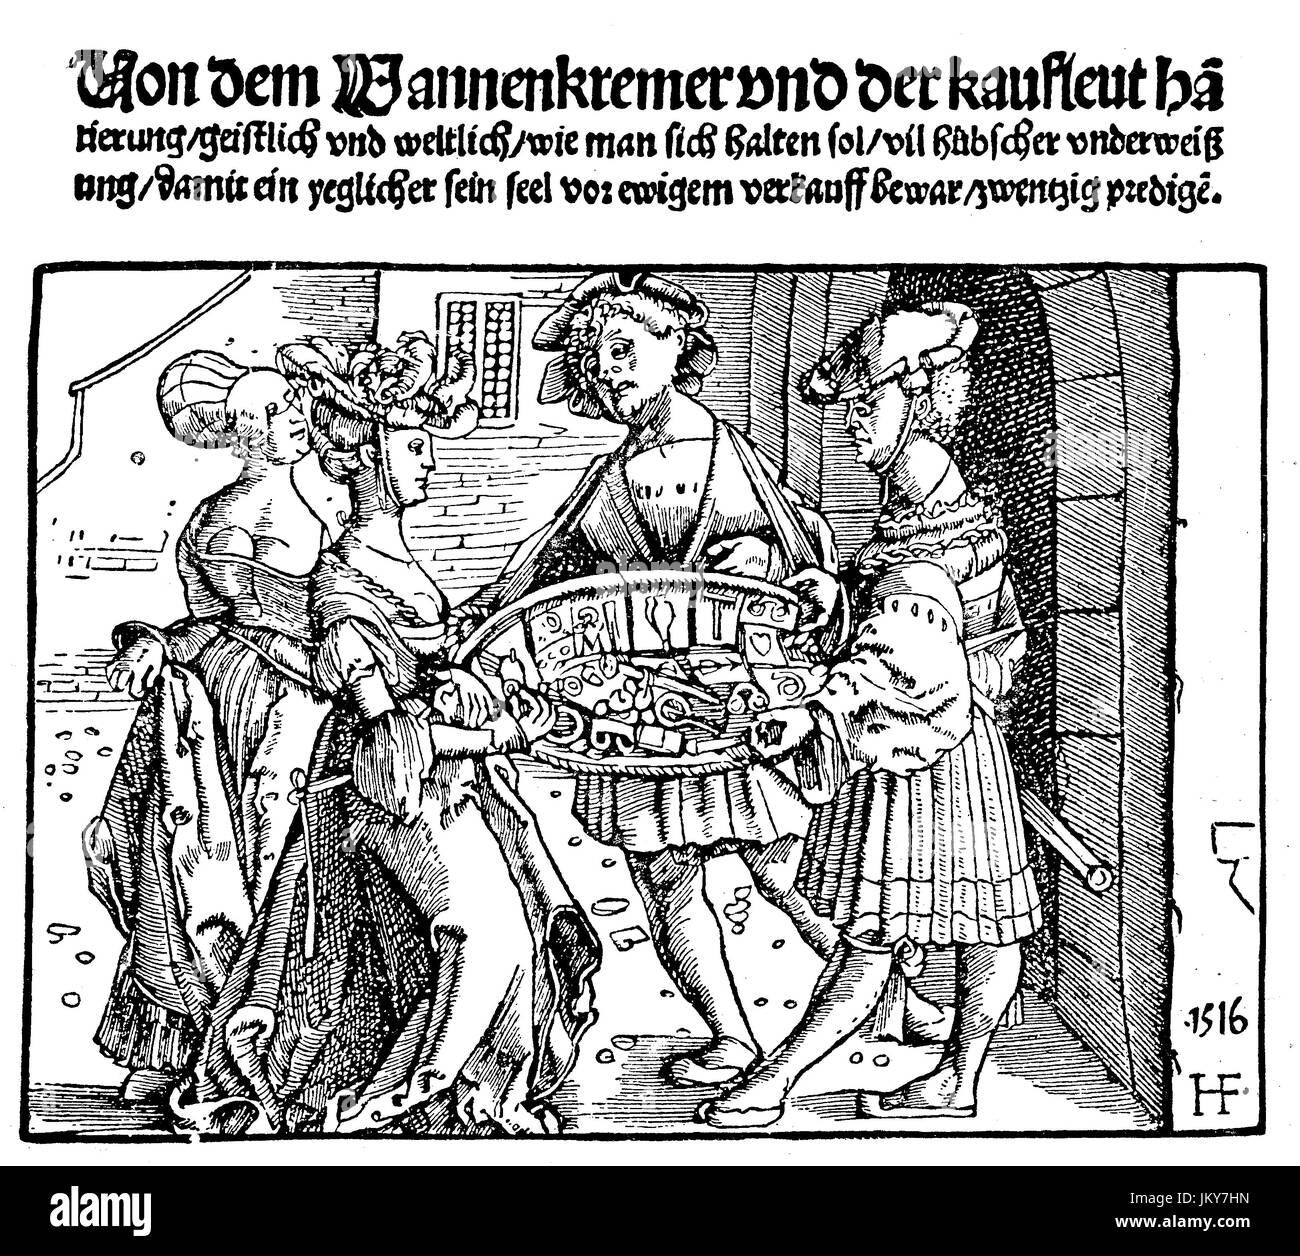 Amélioré : numérique, les costumes, les femmes d'examiner les marchandises les colporteurs, marchands, gravure sur bois de 1516, publication de l'année 1882 Banque D'Images